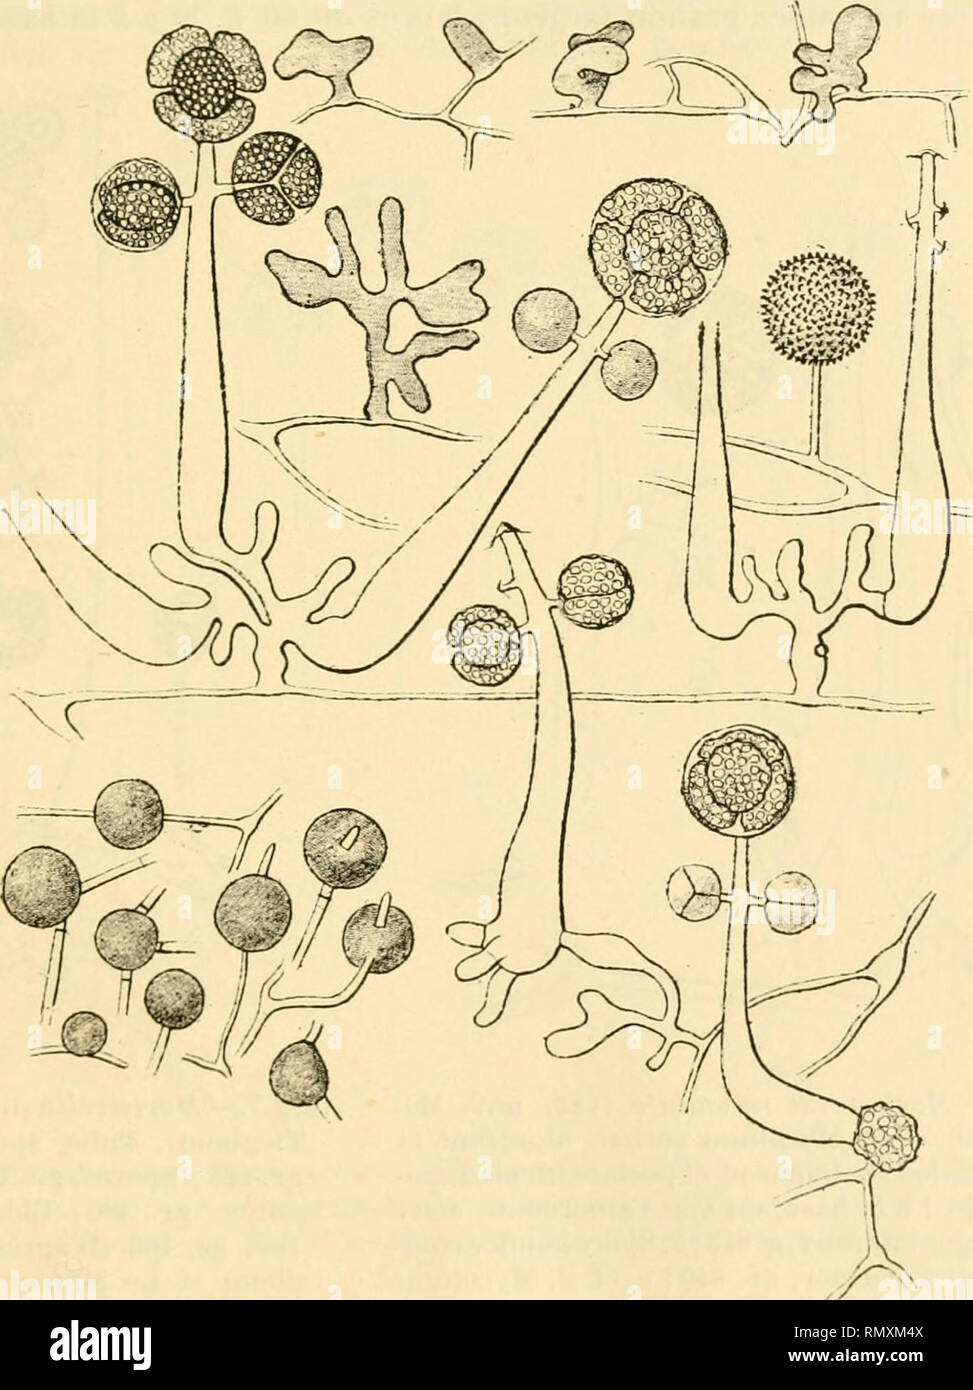 . Annales des sciences naturelles. Plants; Biology. CONTRIBUTION A L ÉTUDE DES MOHTIÉRELLÉES 13 incolores, de 20 a de diamètre, insérées sur de petits rameaux, seules ou pur j^roupes. Les chlamydospores aquatiques ou kystes ont environ 10 a (fig. 4). Mortierella reticulata (Van Tieghem et Le ^Iimnier). Filaments fructifères de 150 jxenviron, moins effilés que dans M. polycephata. Spores au nombre de 2 à 8, souvent  dans un sporange; elles ont une membrane externe épaissie en un élégant réseau ; leui' dimension varie de 10 à24 UL. — Sur le sporange terminal, (pi('l(|ues rameaux grêles terminés Stock Photo